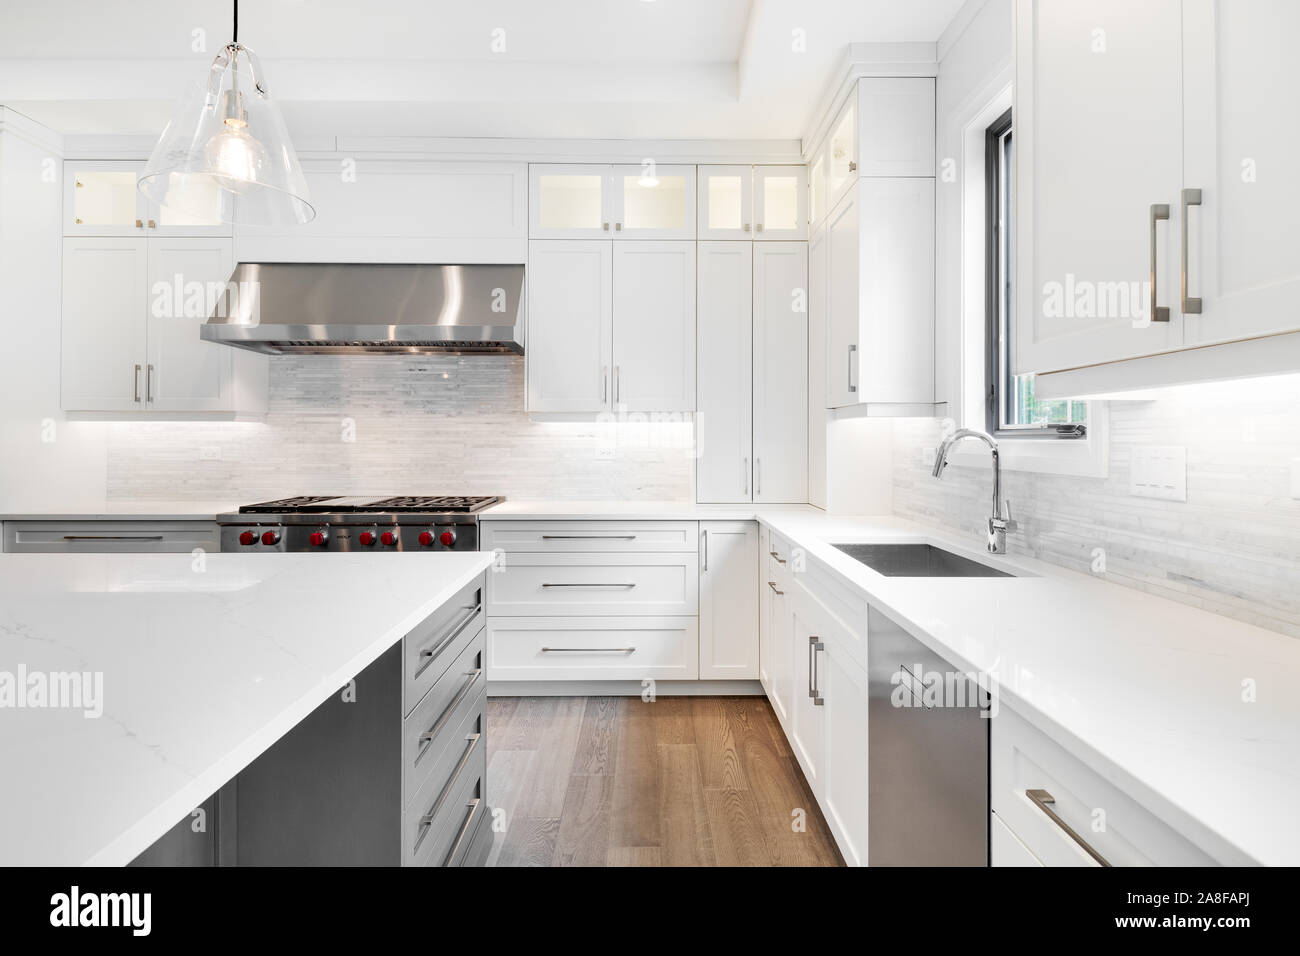 Une luxueuse cuisine moderne avec des appareils en acier inoxydable loup blanc entouré de belles armoires, granite et planchers de bois. Banque D'Images